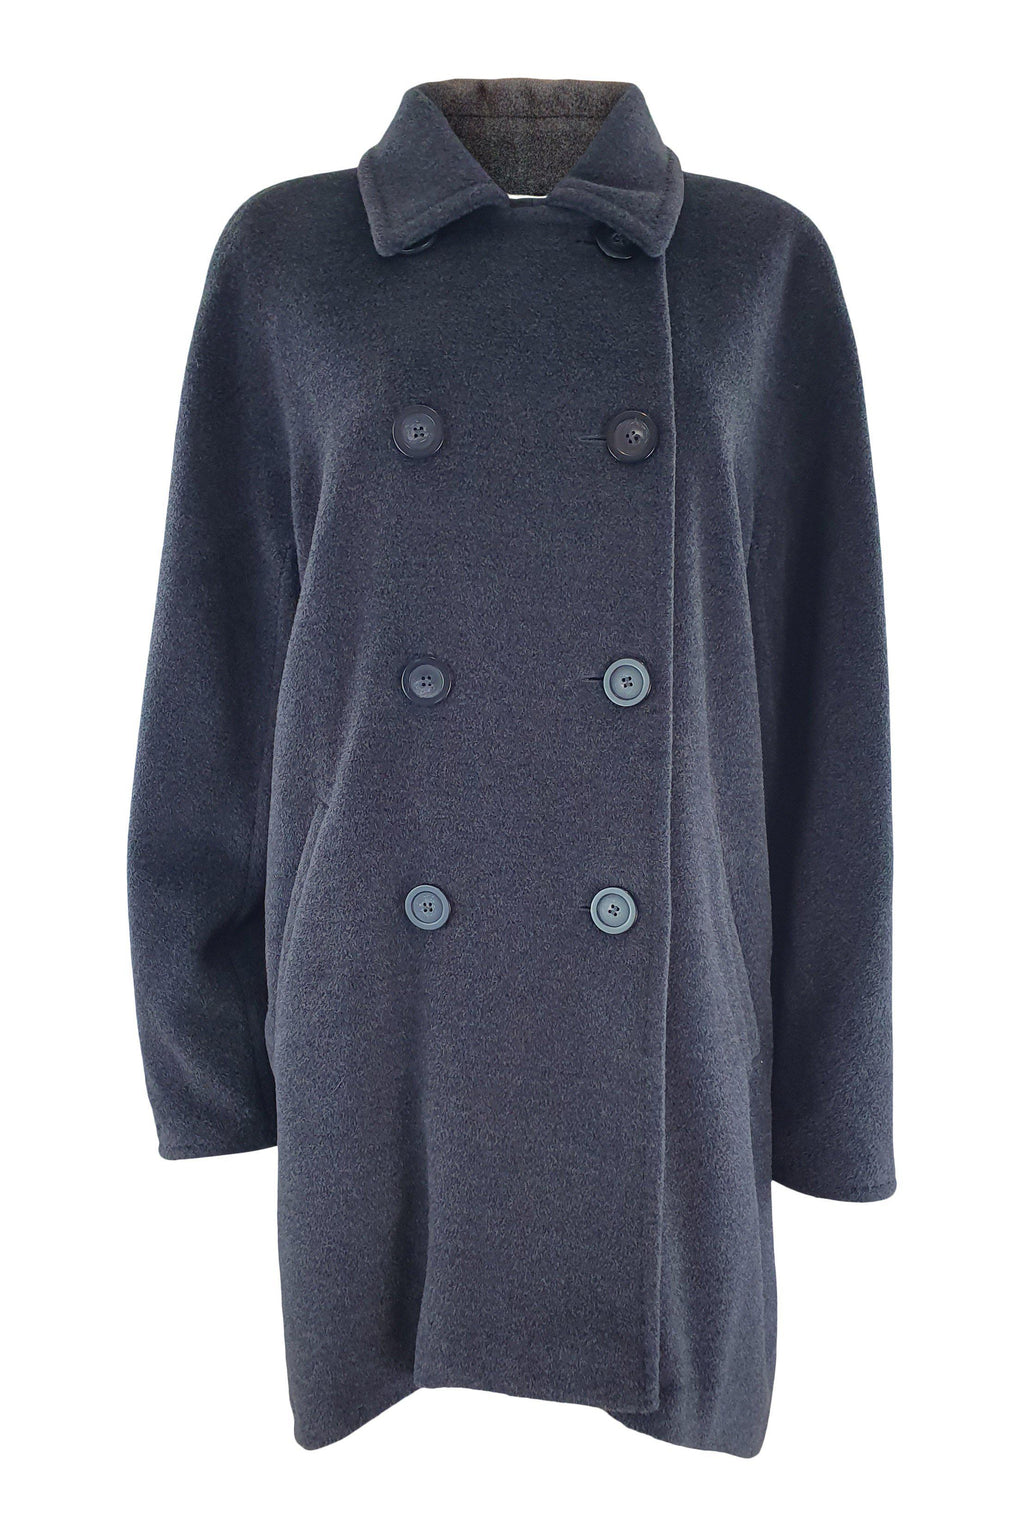 MAX MARA Grey Wool and Cashmere Blend Overcoat (UK 12)-Max Mara-The Freperie